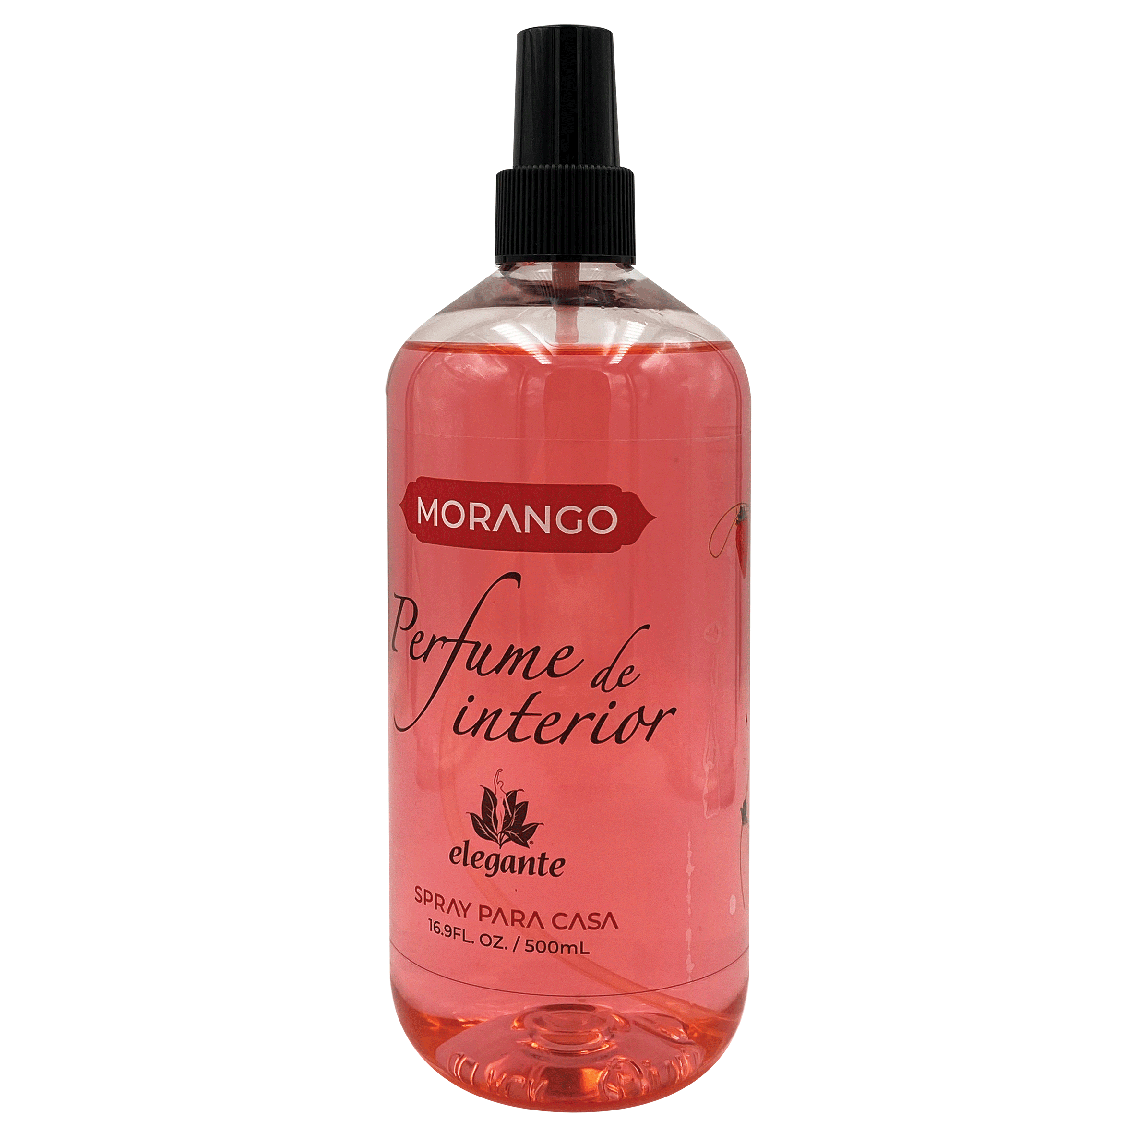 Perfume Interior Morango Elegante (500 ml)